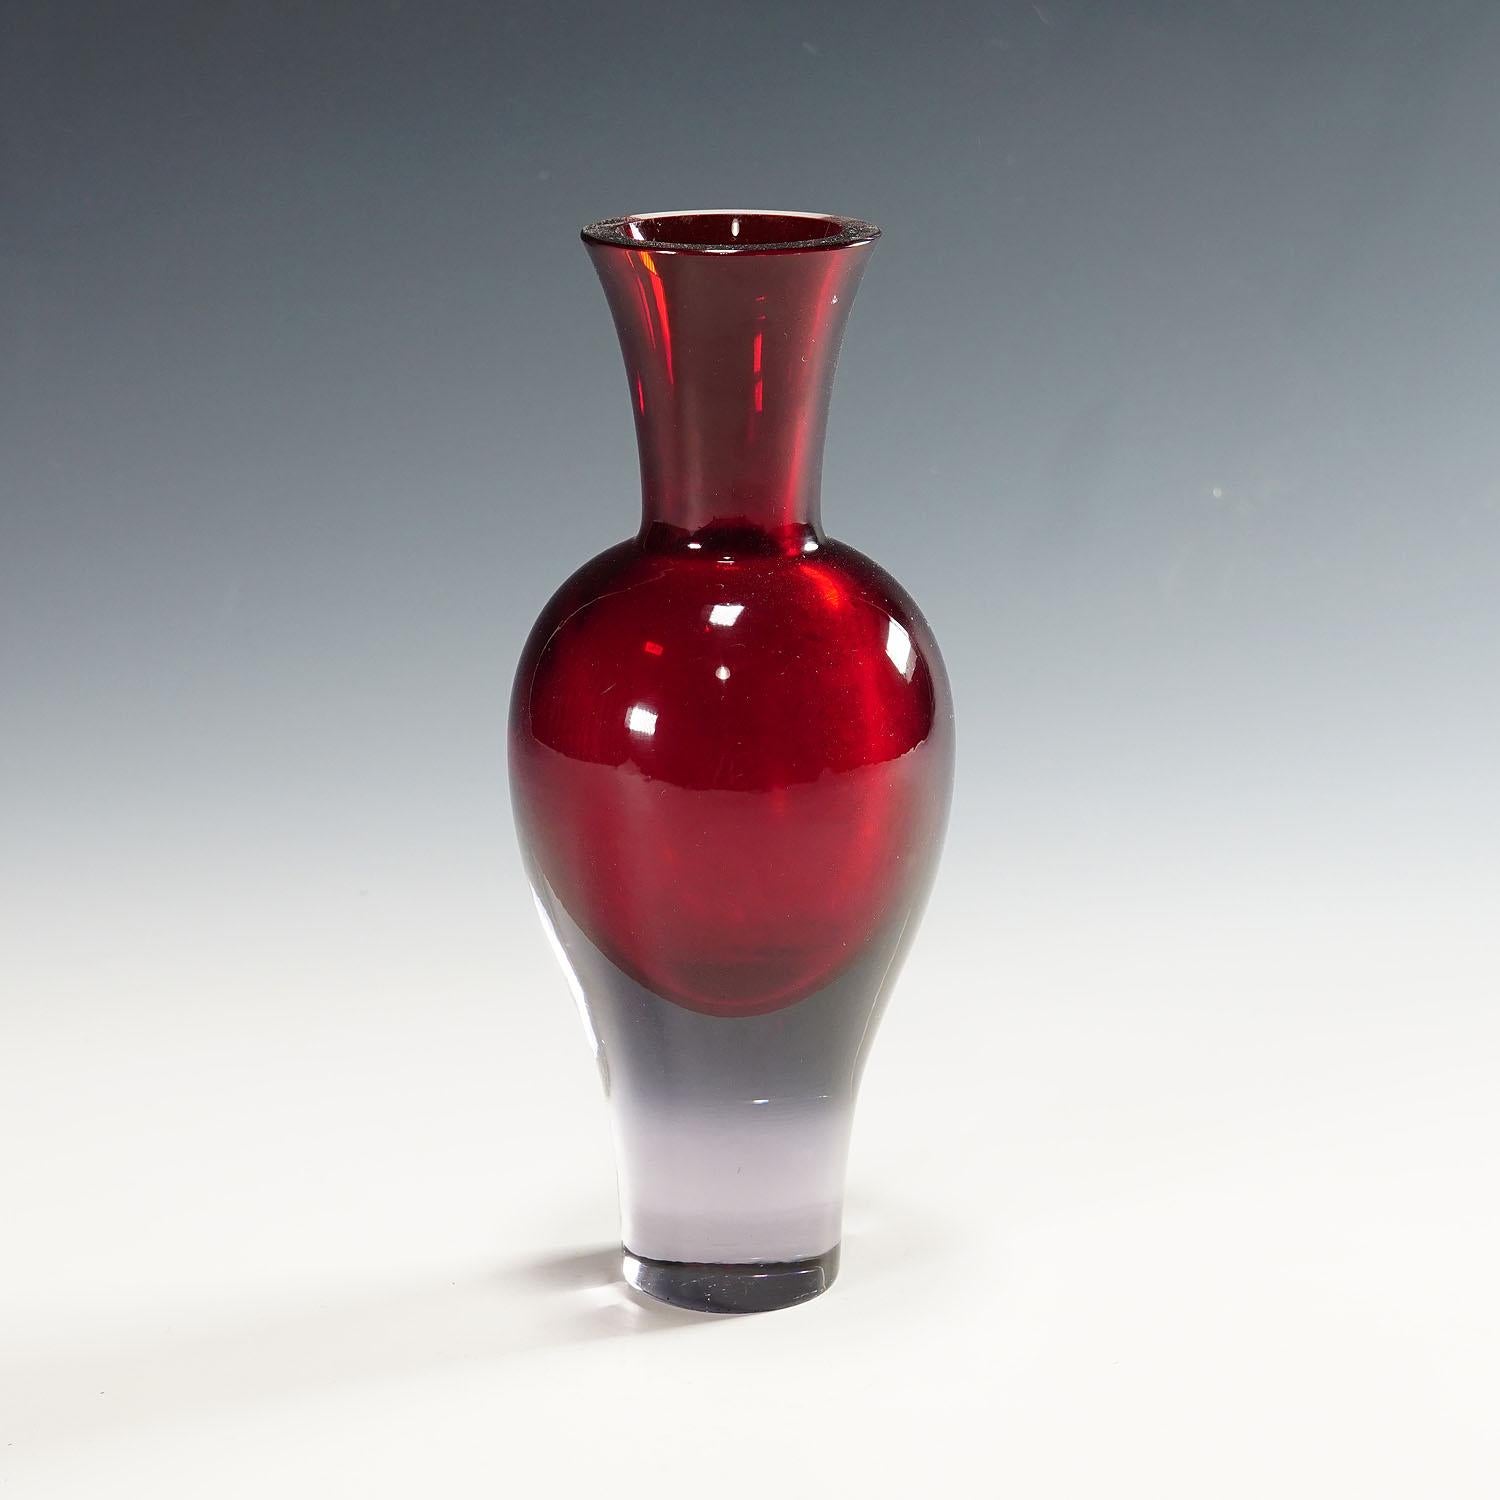 Vase en verre Vetri d'Arte Murano Sommerso, 1960.

Un vase vintage en verre d'art de Murano. Conçue par Flavio Poli et fabriquée par Seguso Vetri d'Arte vers les années 1960. Fabriqué en verre violet épais avec une incrustation rouge rubis. Un